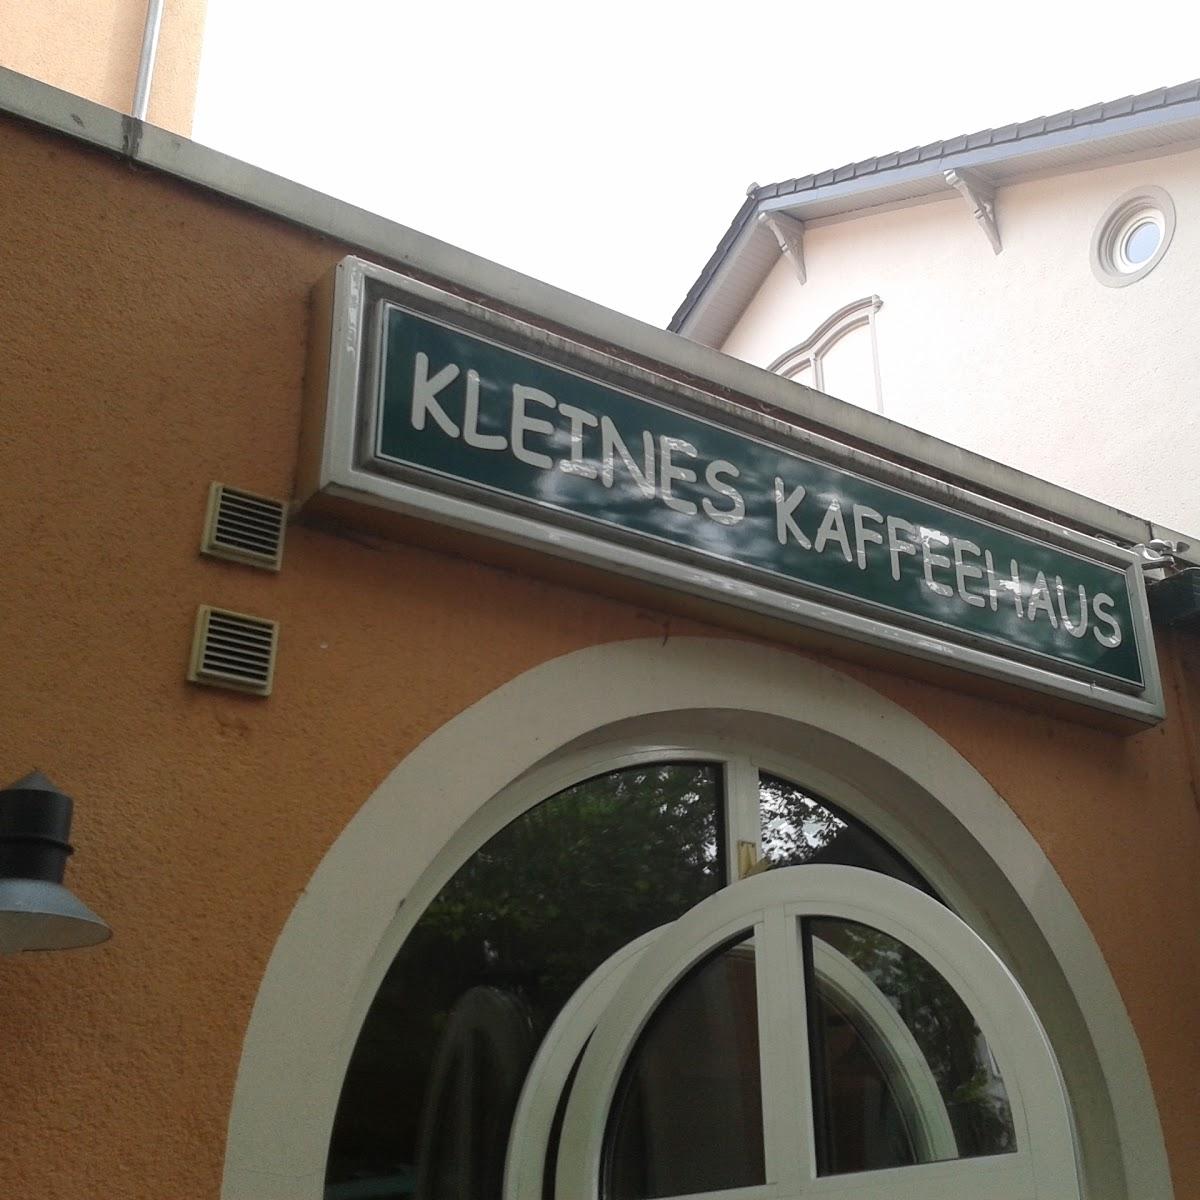 Restaurant "Kleines Kaffeehaus" in Bad Kreuznach